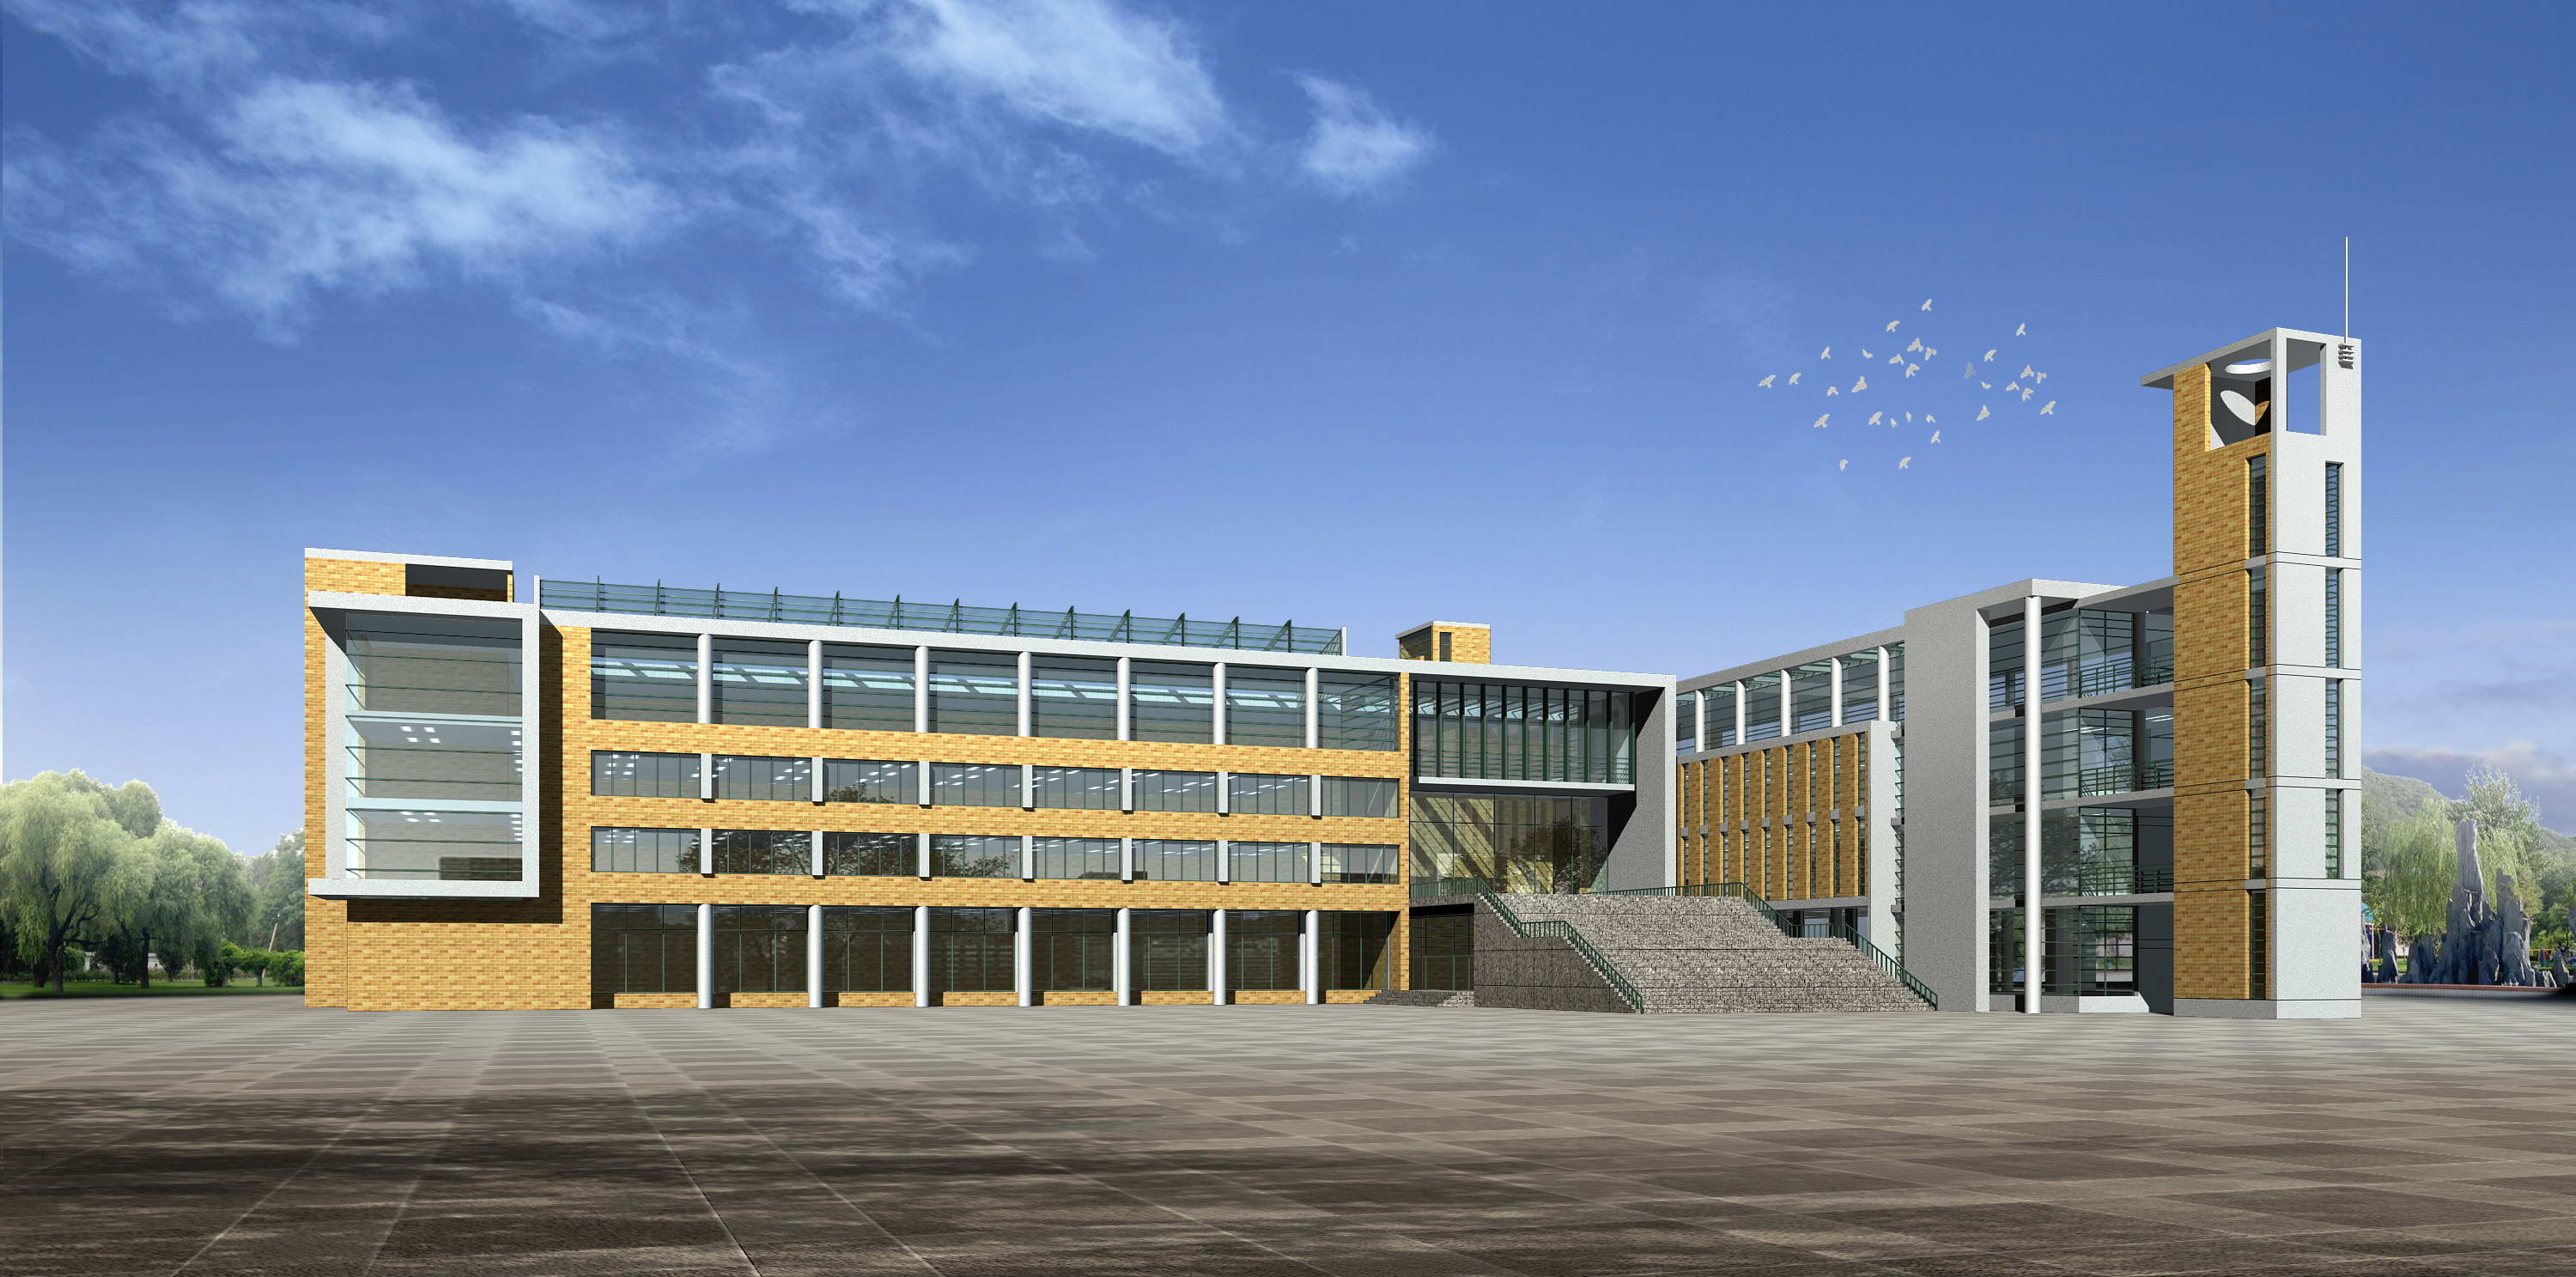 某中心小学教学综合楼 已竣工投入使用-福建筑仁工程设计事务所